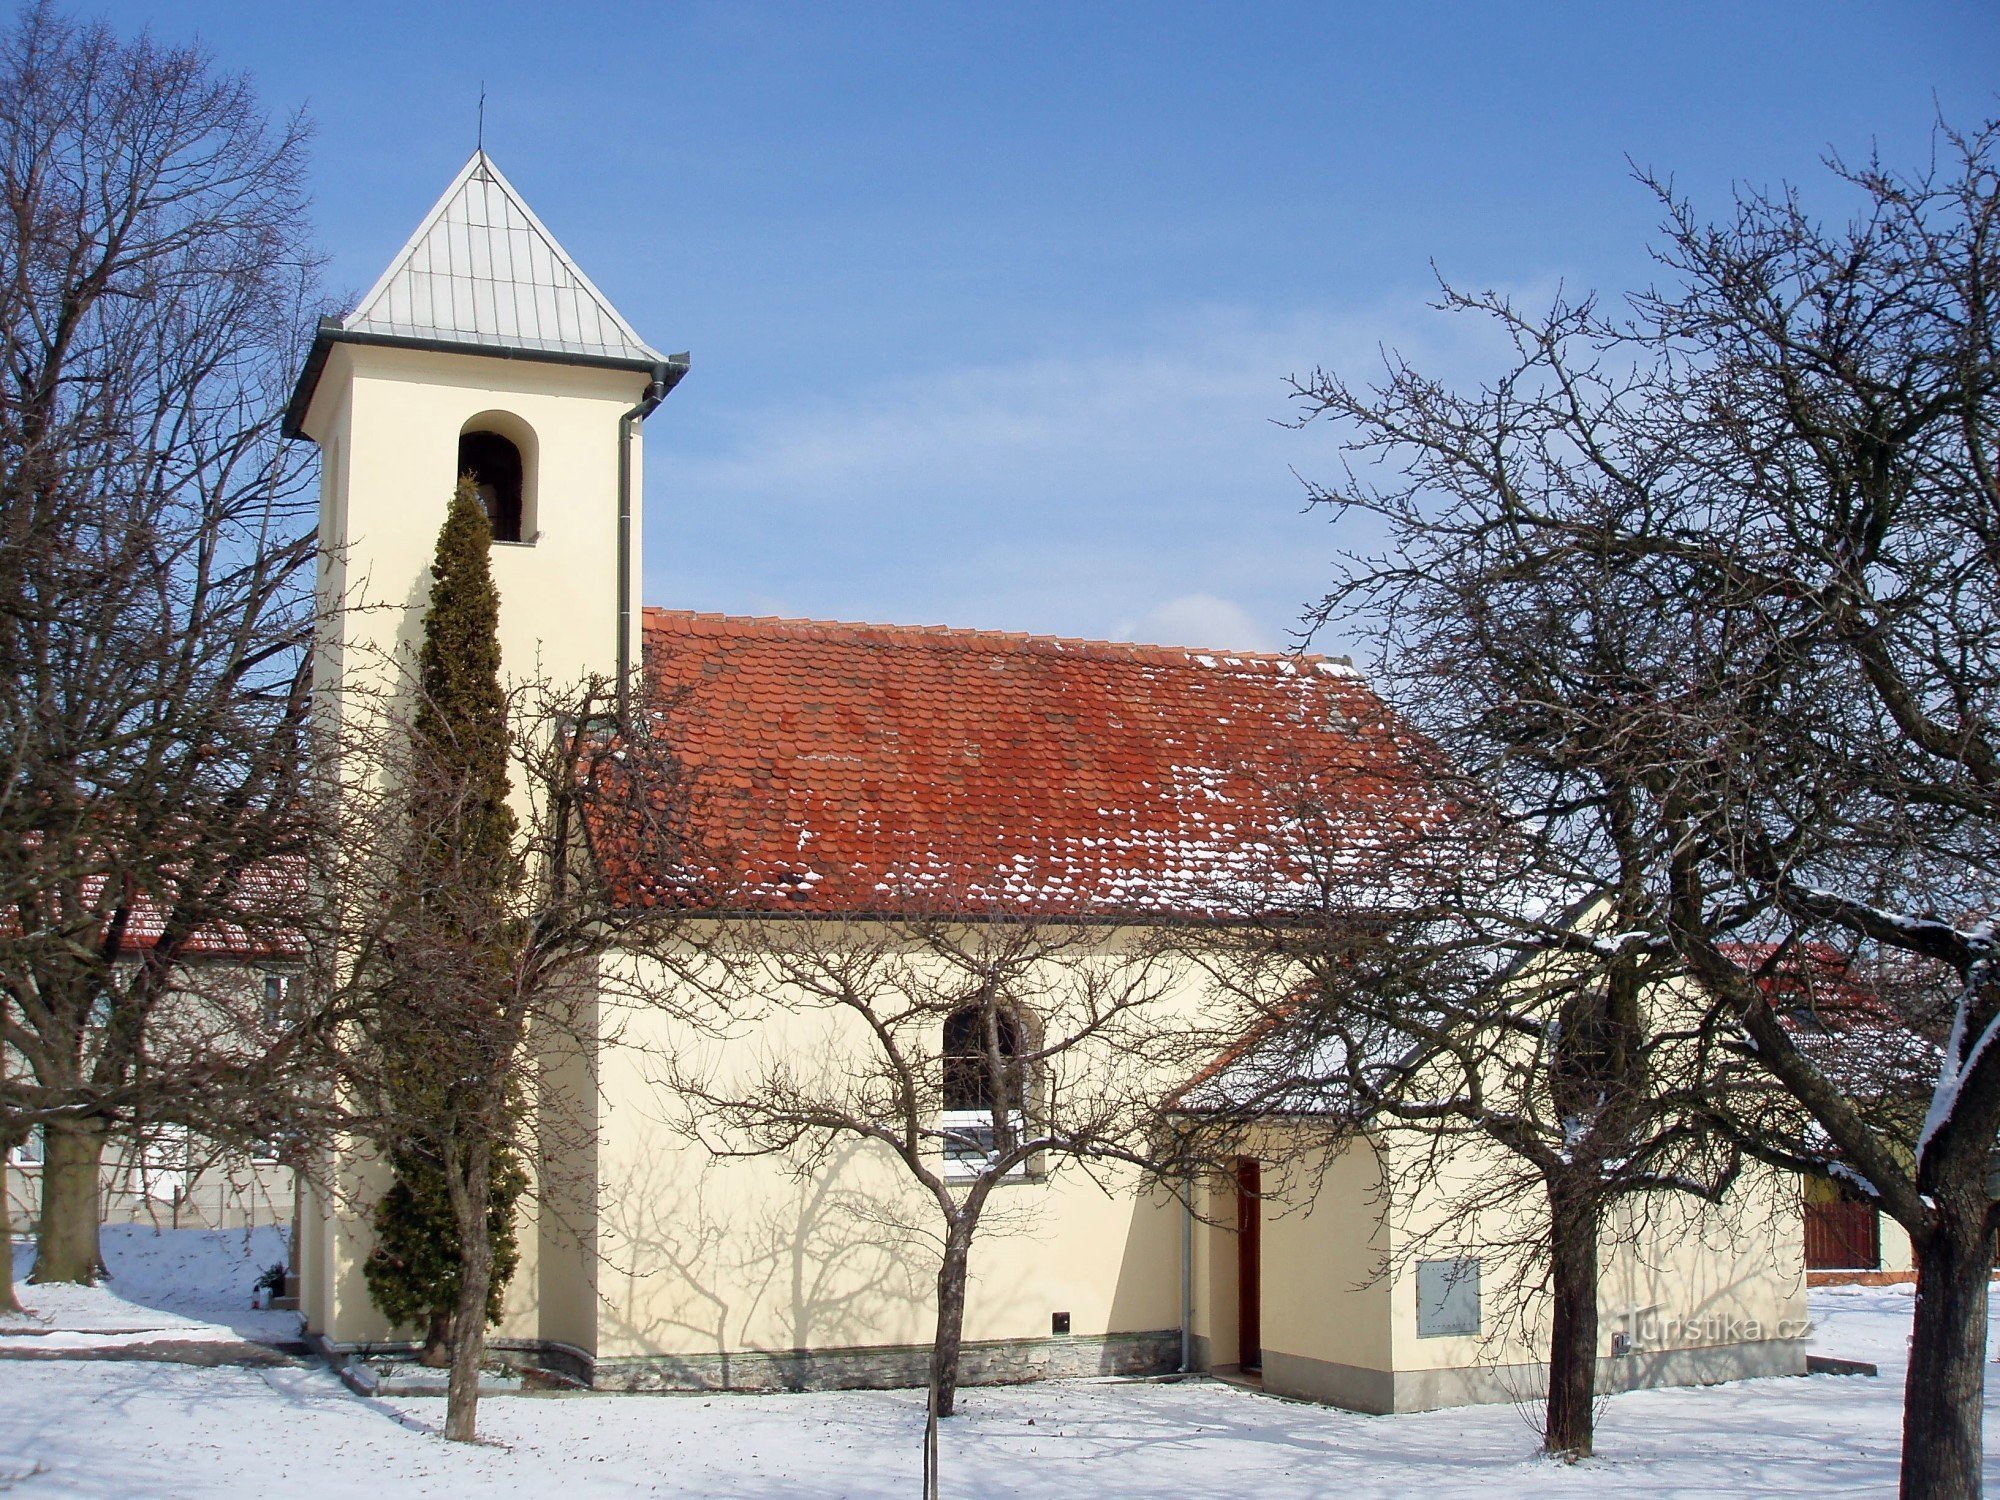 Malé Hradisko - 冬天的小教堂